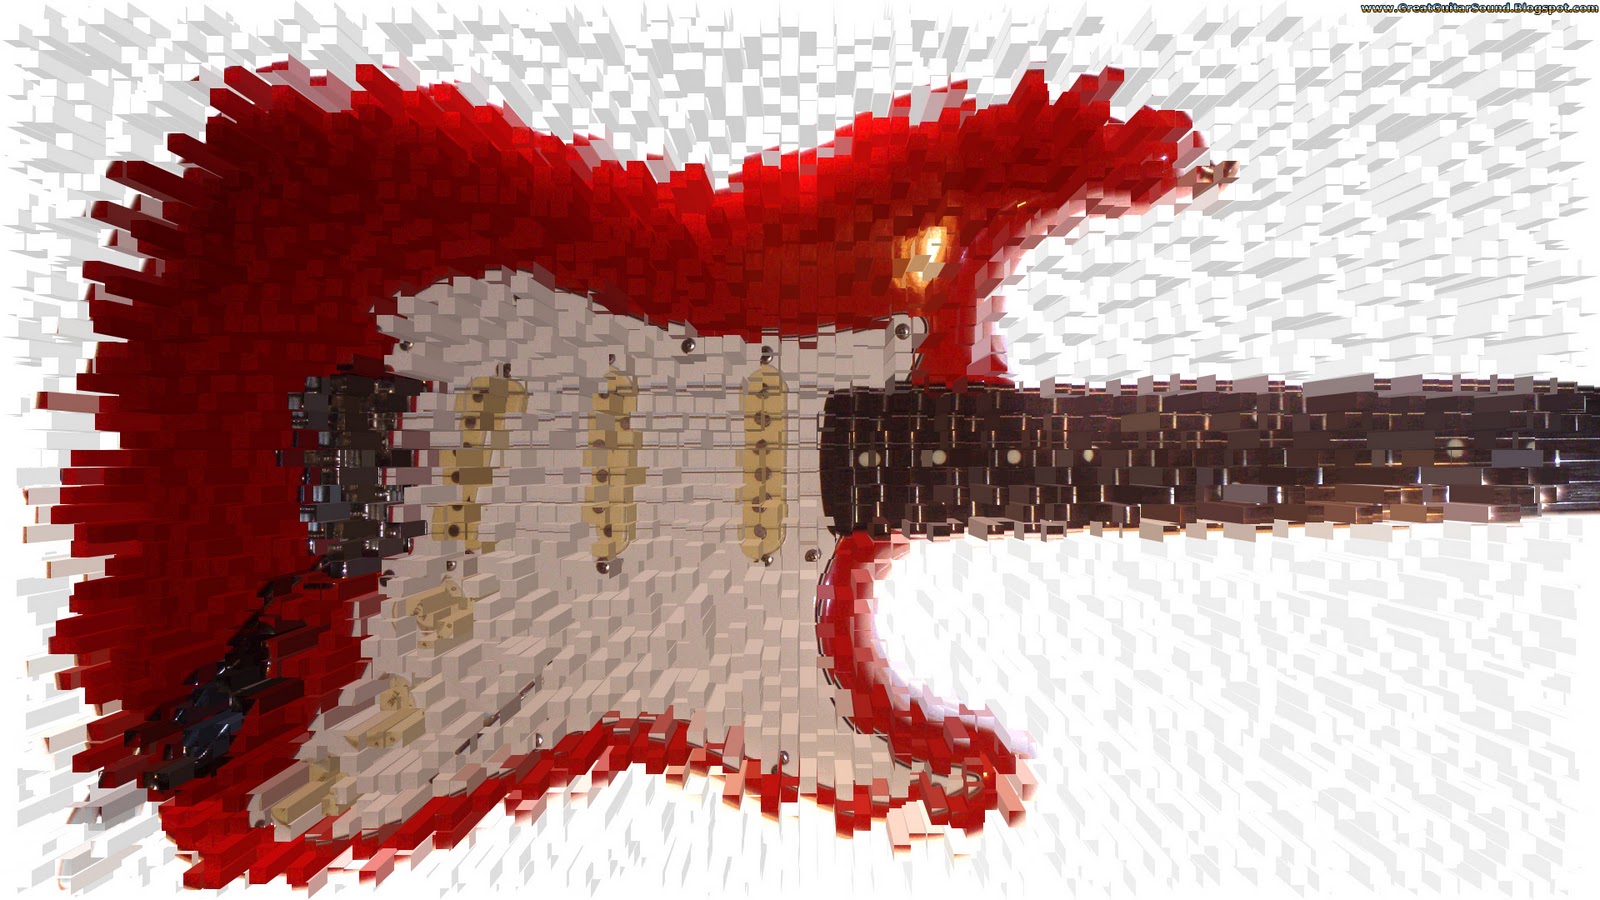 http://1.bp.blogspot.com/-FP3sSgucNps/TqcT6tANcfI/AAAAAAAAA-k/VD3qjhBwDFg/s1600/Red+Fender+Stratocaster+Electric+Guitar+Lego+Blocks+Extrude+Background+HD+Guitar+Music+Desktop+Wallpaper+1920x1080+Great+Guitar+Sound+www.GreatGuitarSound.Blogspot.com.jpg